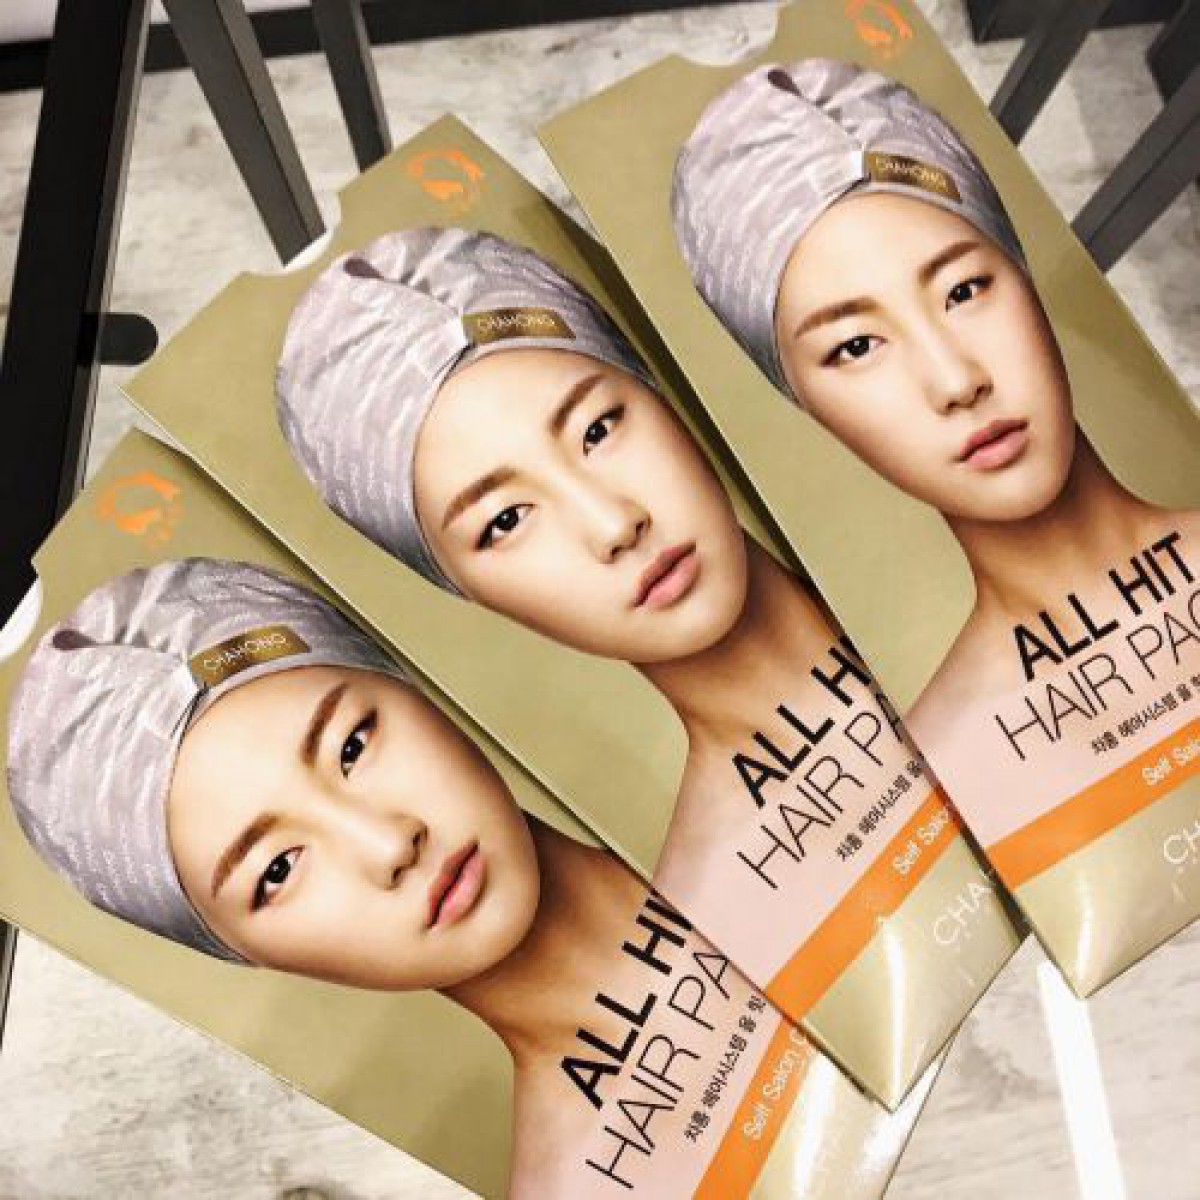 【サロン帰りのサラサラヘア】韓国人気ヘアブランド「チャホン」のヘアパックで、簡単にサラサラヘアになれるって噂♡